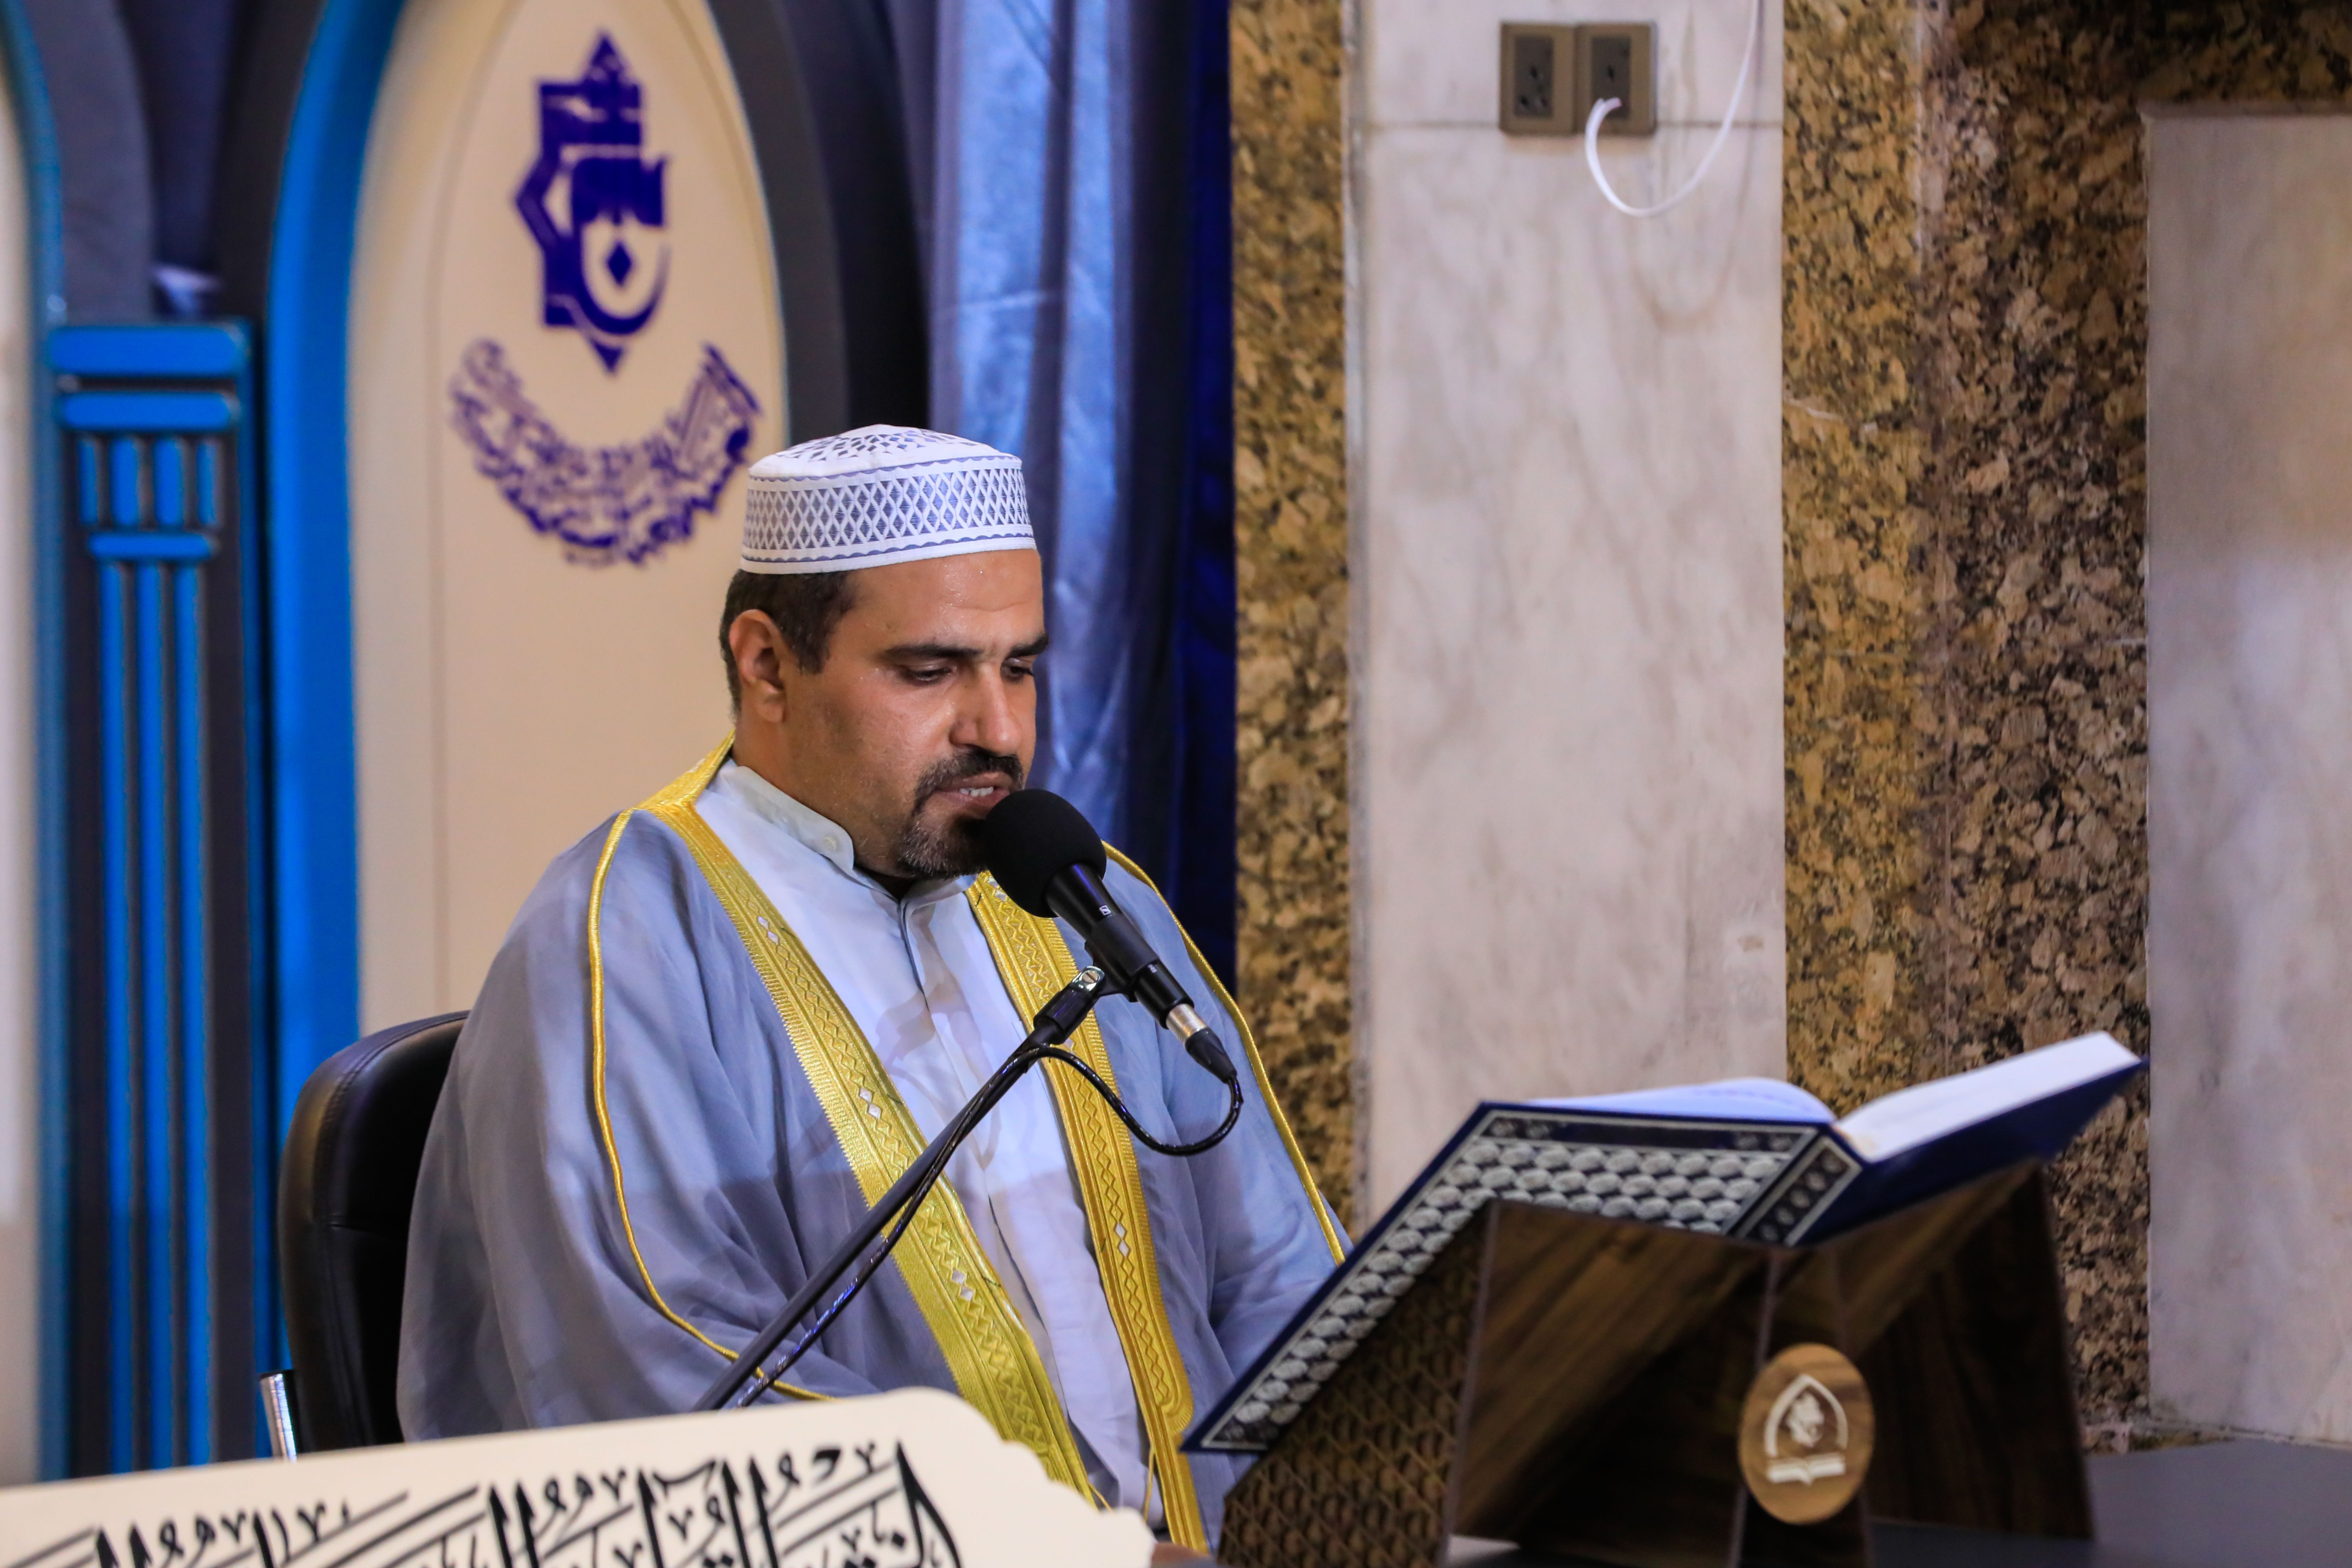 معهد القرآن الكريم يطلق الختمة القرآنية الرمضانية المرتلة وفق اجراءات الوقاية الصحية